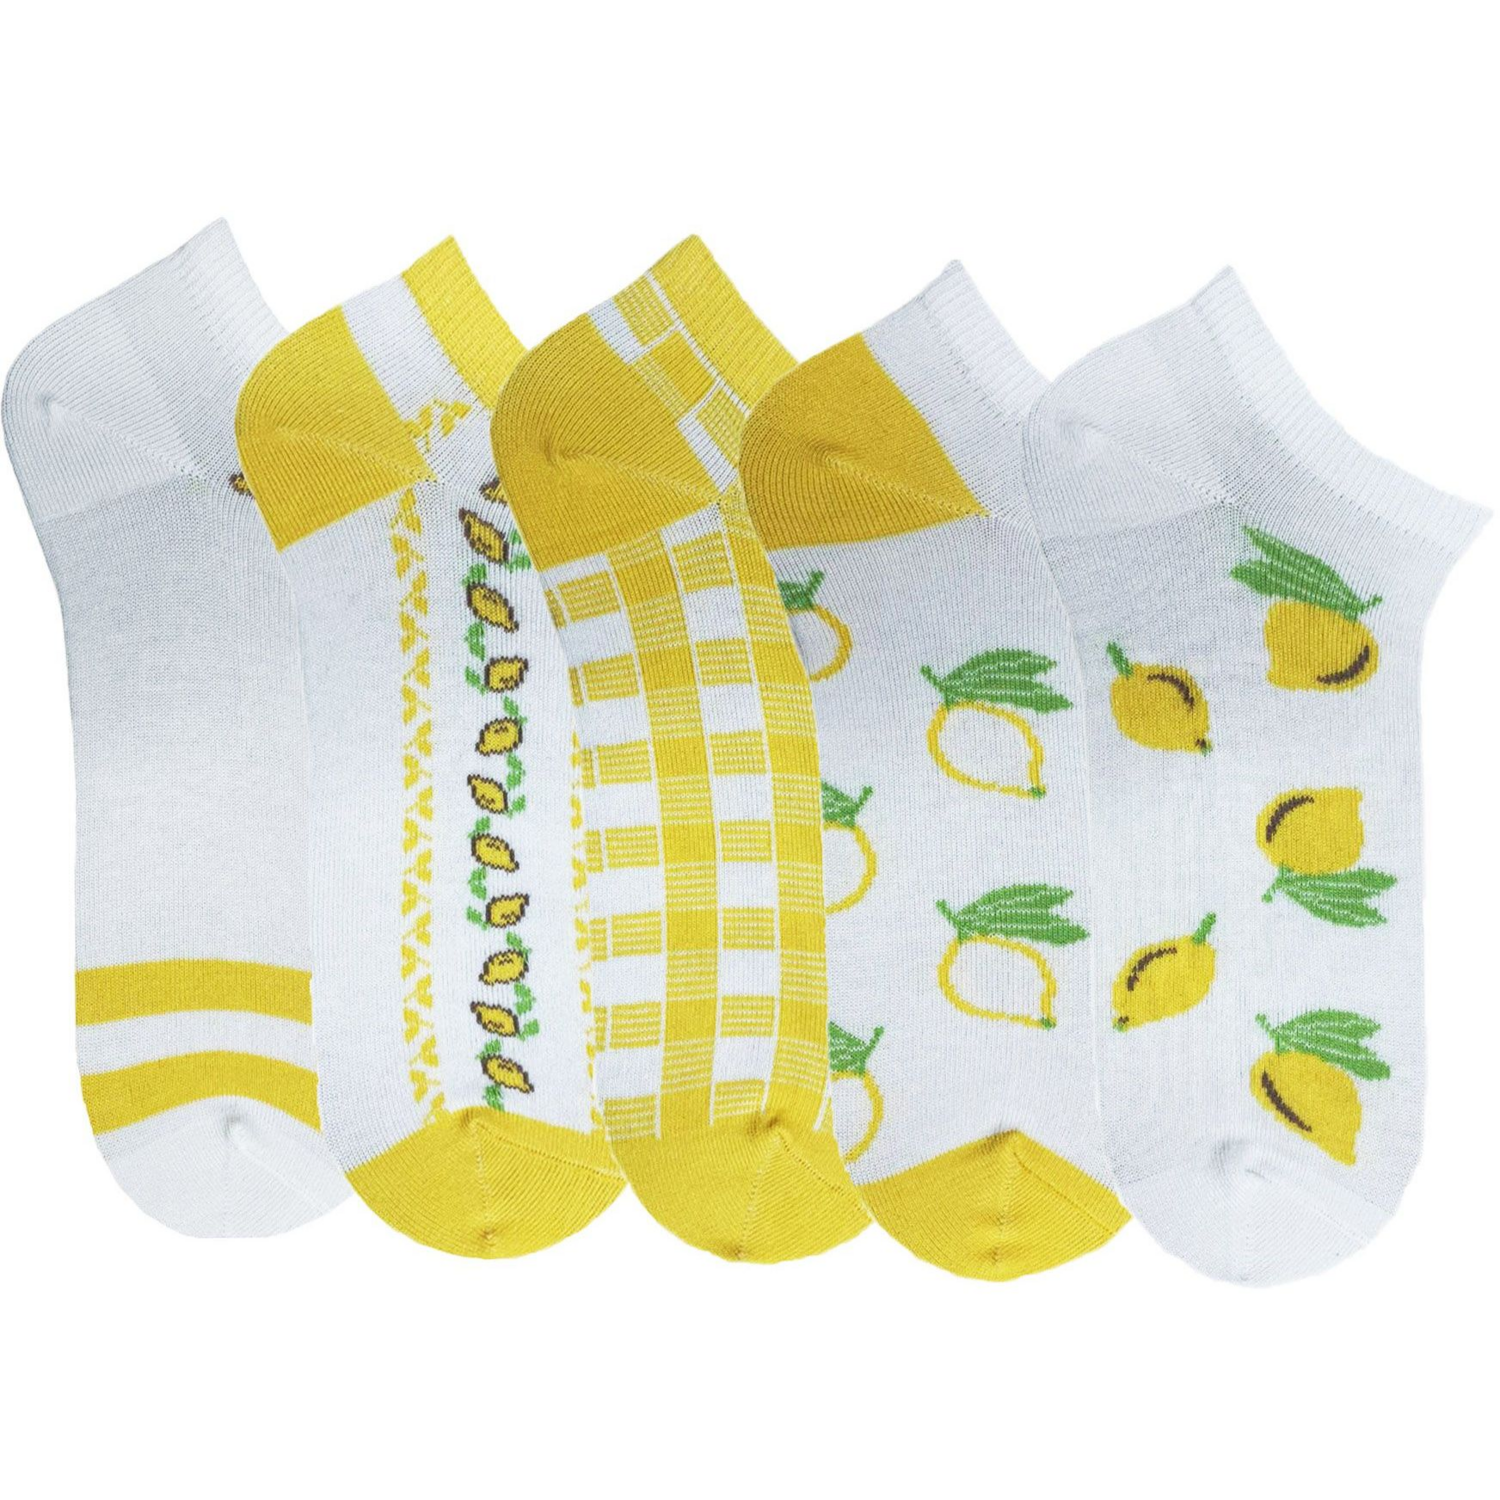 Набір жіночих шкарпеток Premier Socks 36-40 5 пар жовті з принтом (4820163319353)фото